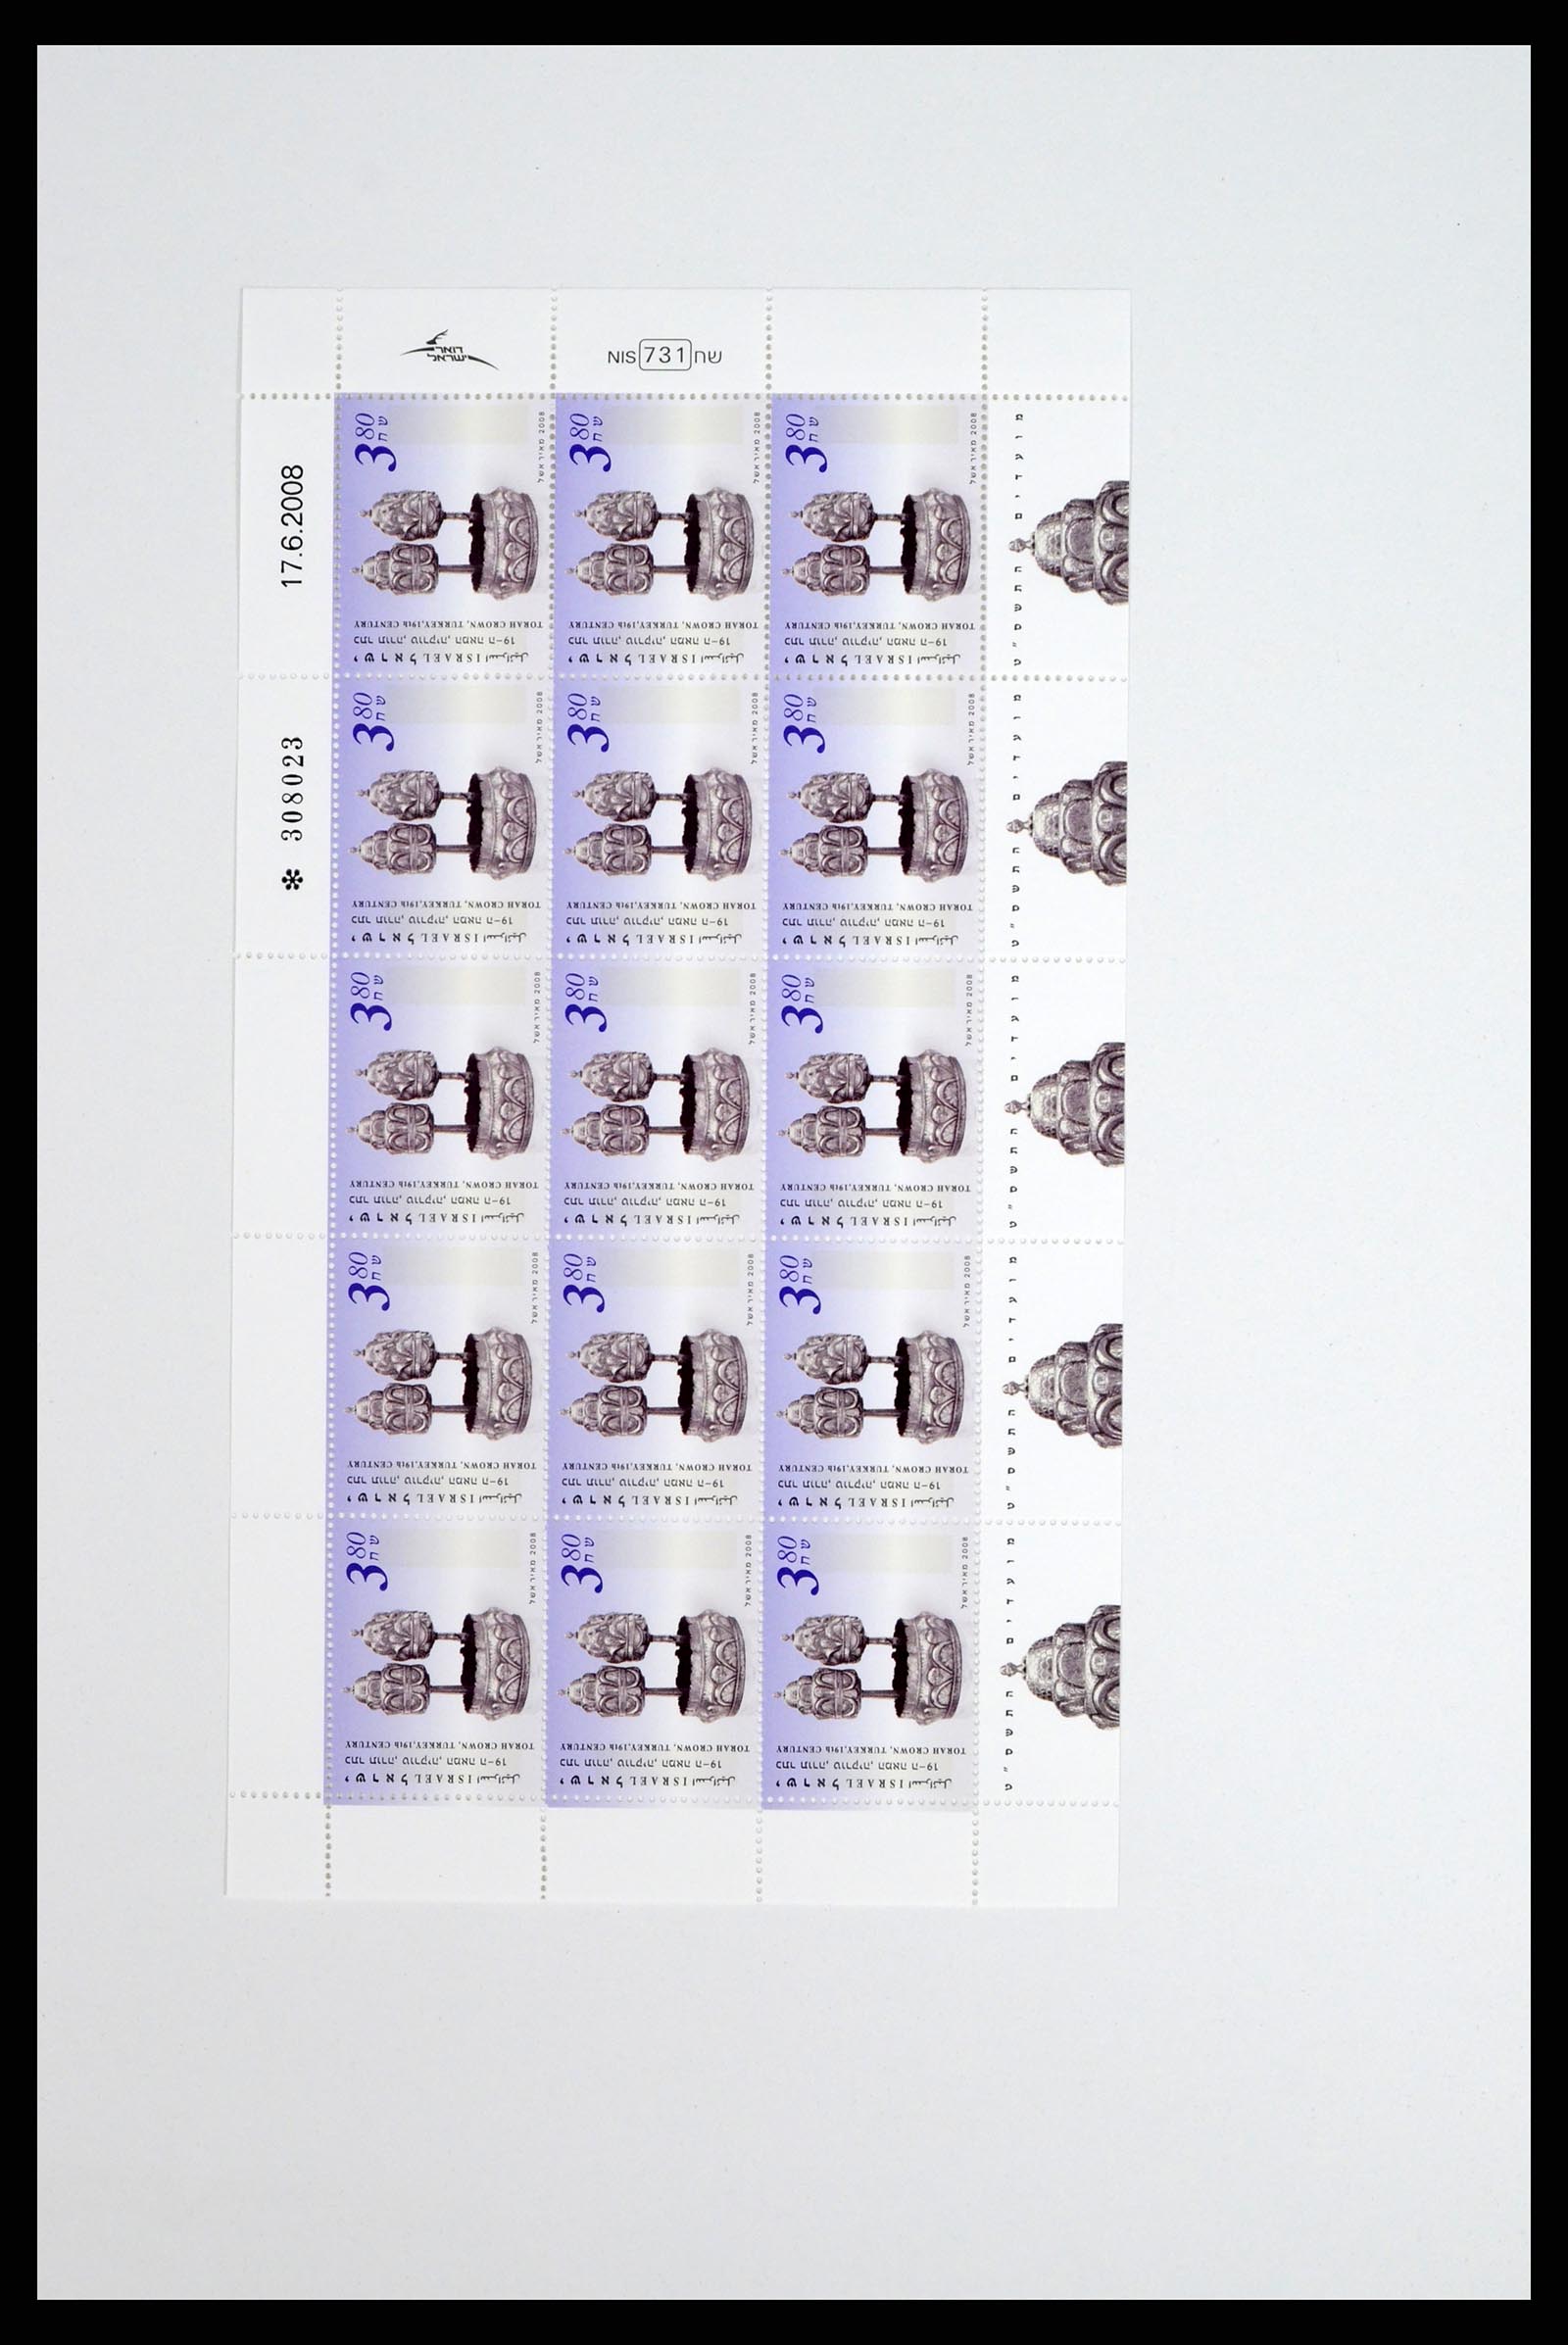 37779 056 - Postzegelverzameling 37779 Israël velletjes 1986-2009.